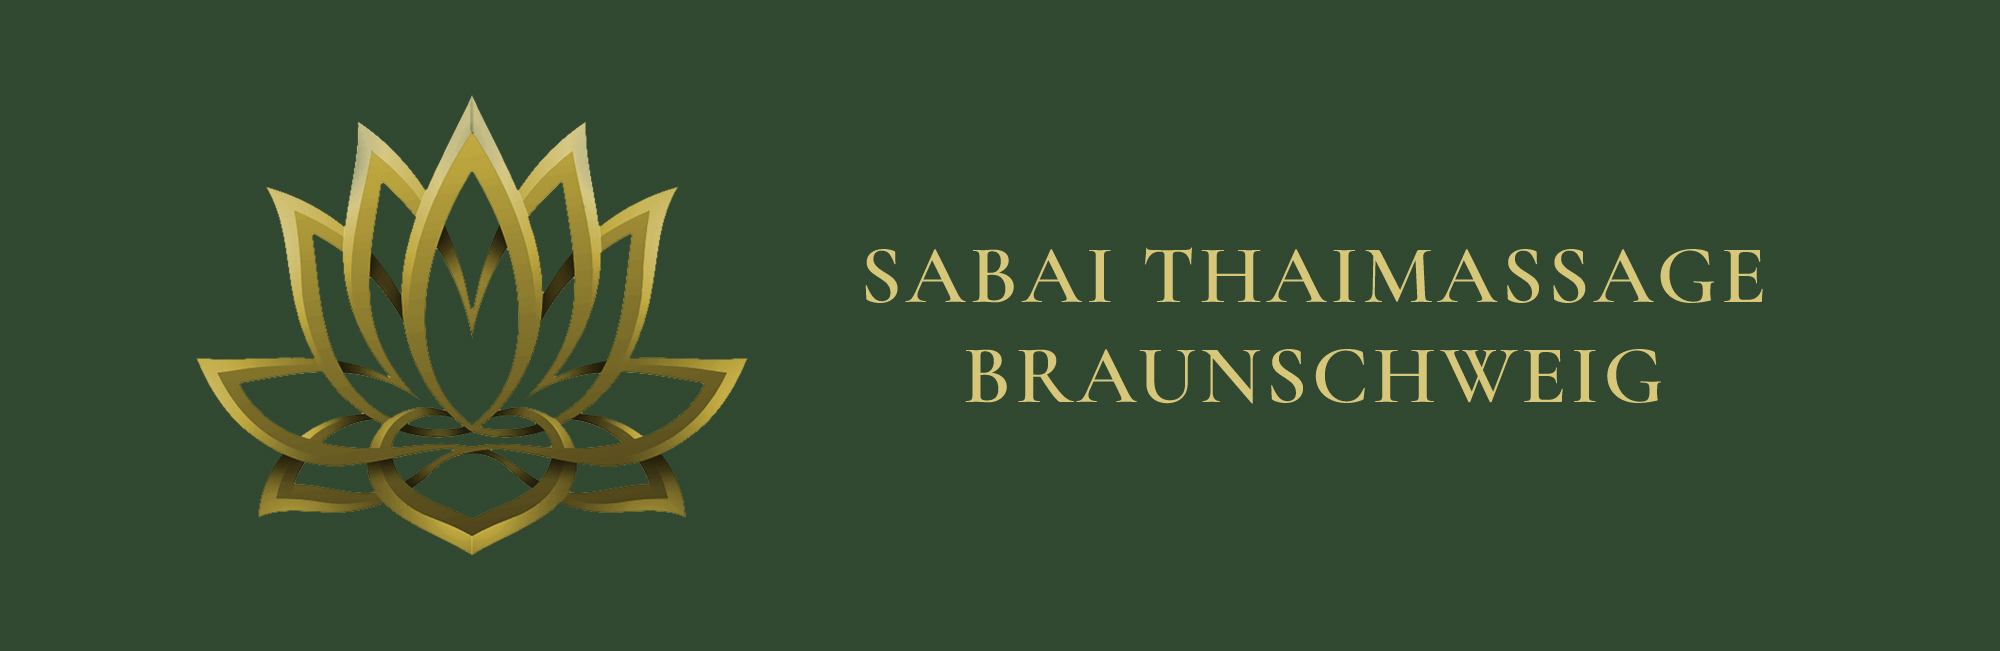 Sabai-Thaimassage Braunschweig